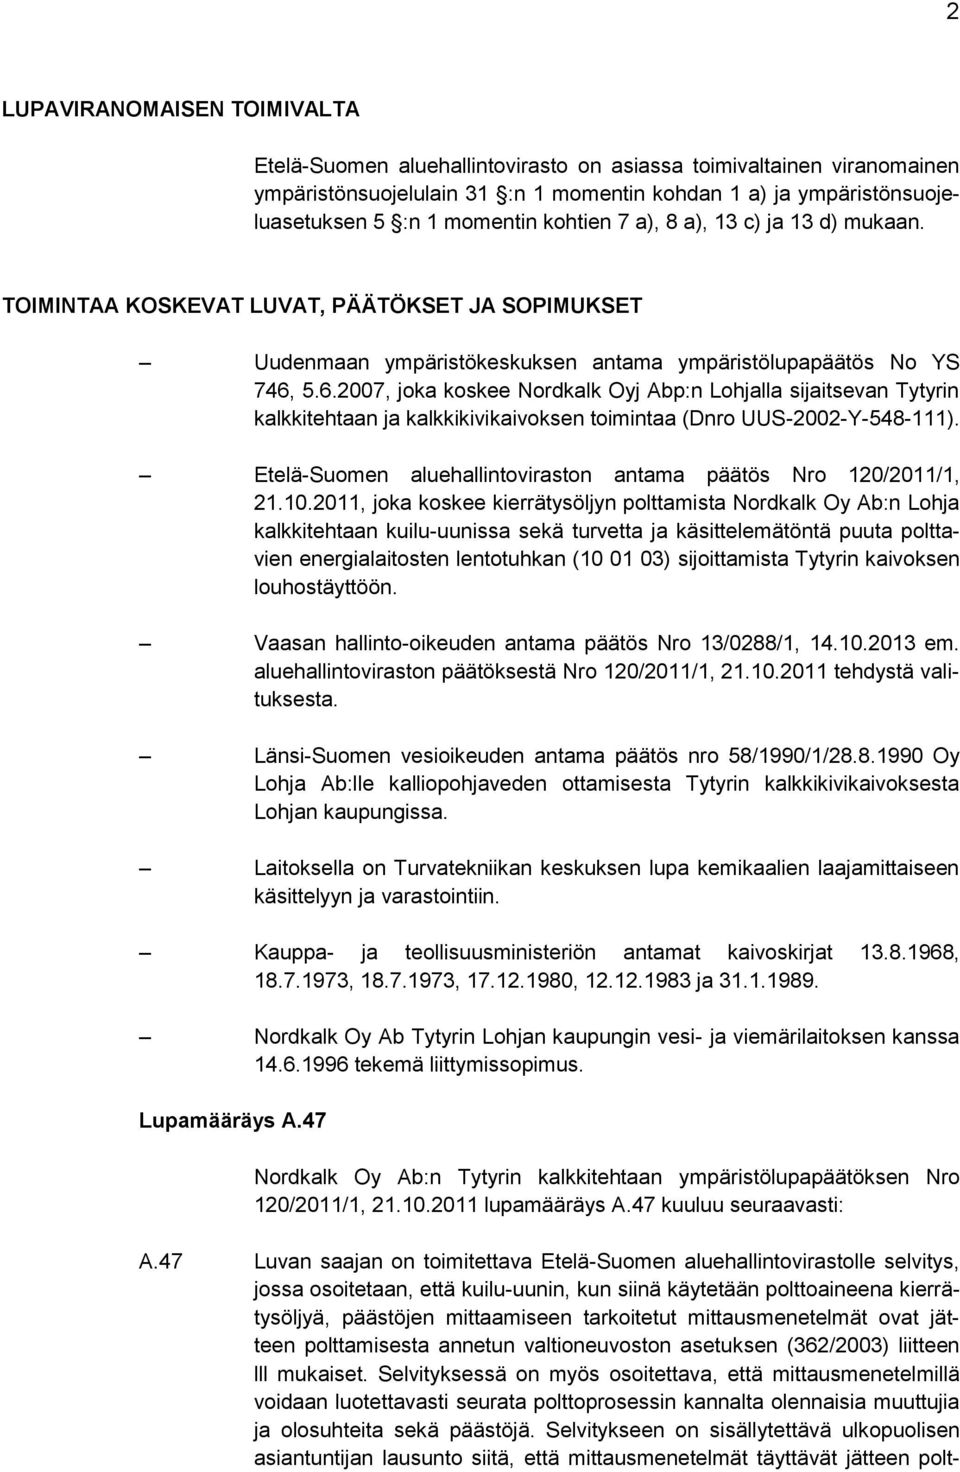 5.6.2007, joka koskee Nordkalk Oyj Abp:n Lohjalla sijaitsevan Tytyrin kalkkitehtaan ja kalkkikivikaivoksen toimintaa (Dnro UUS-2002-Y-548-111).